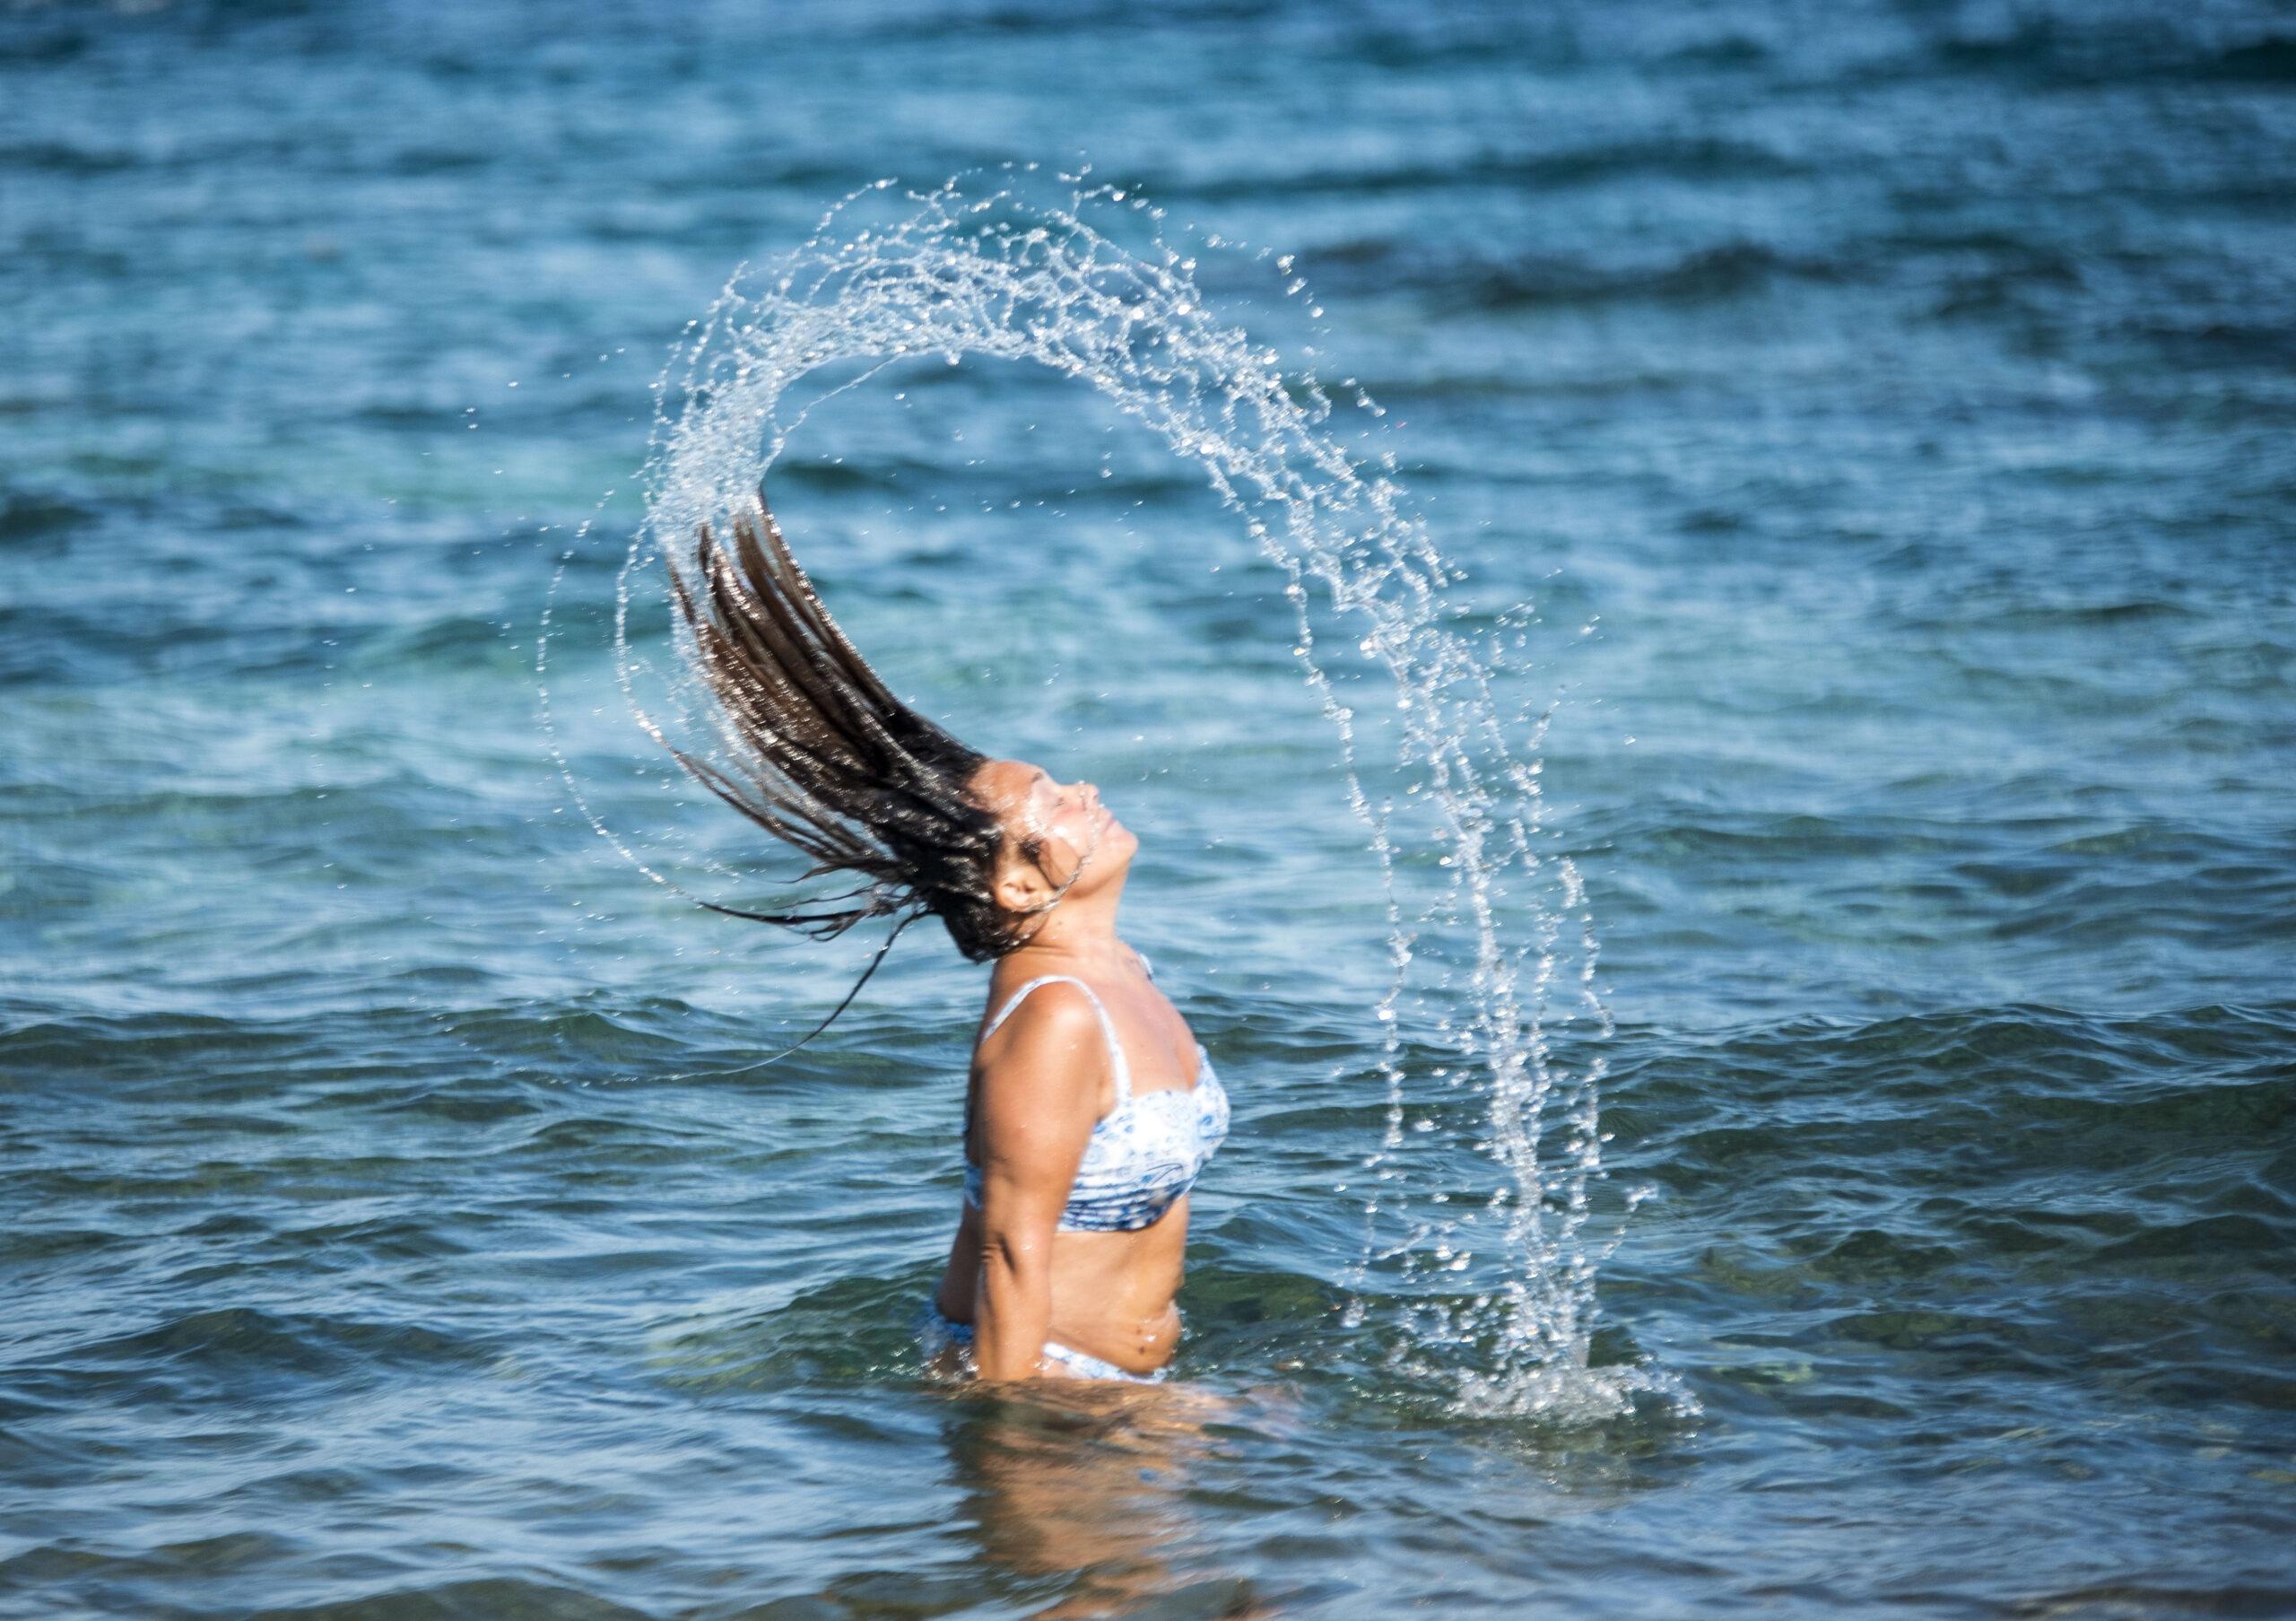 Daniela Innesti gioca con l'acqua a Topinetti, la spiaggia libera in Elba.